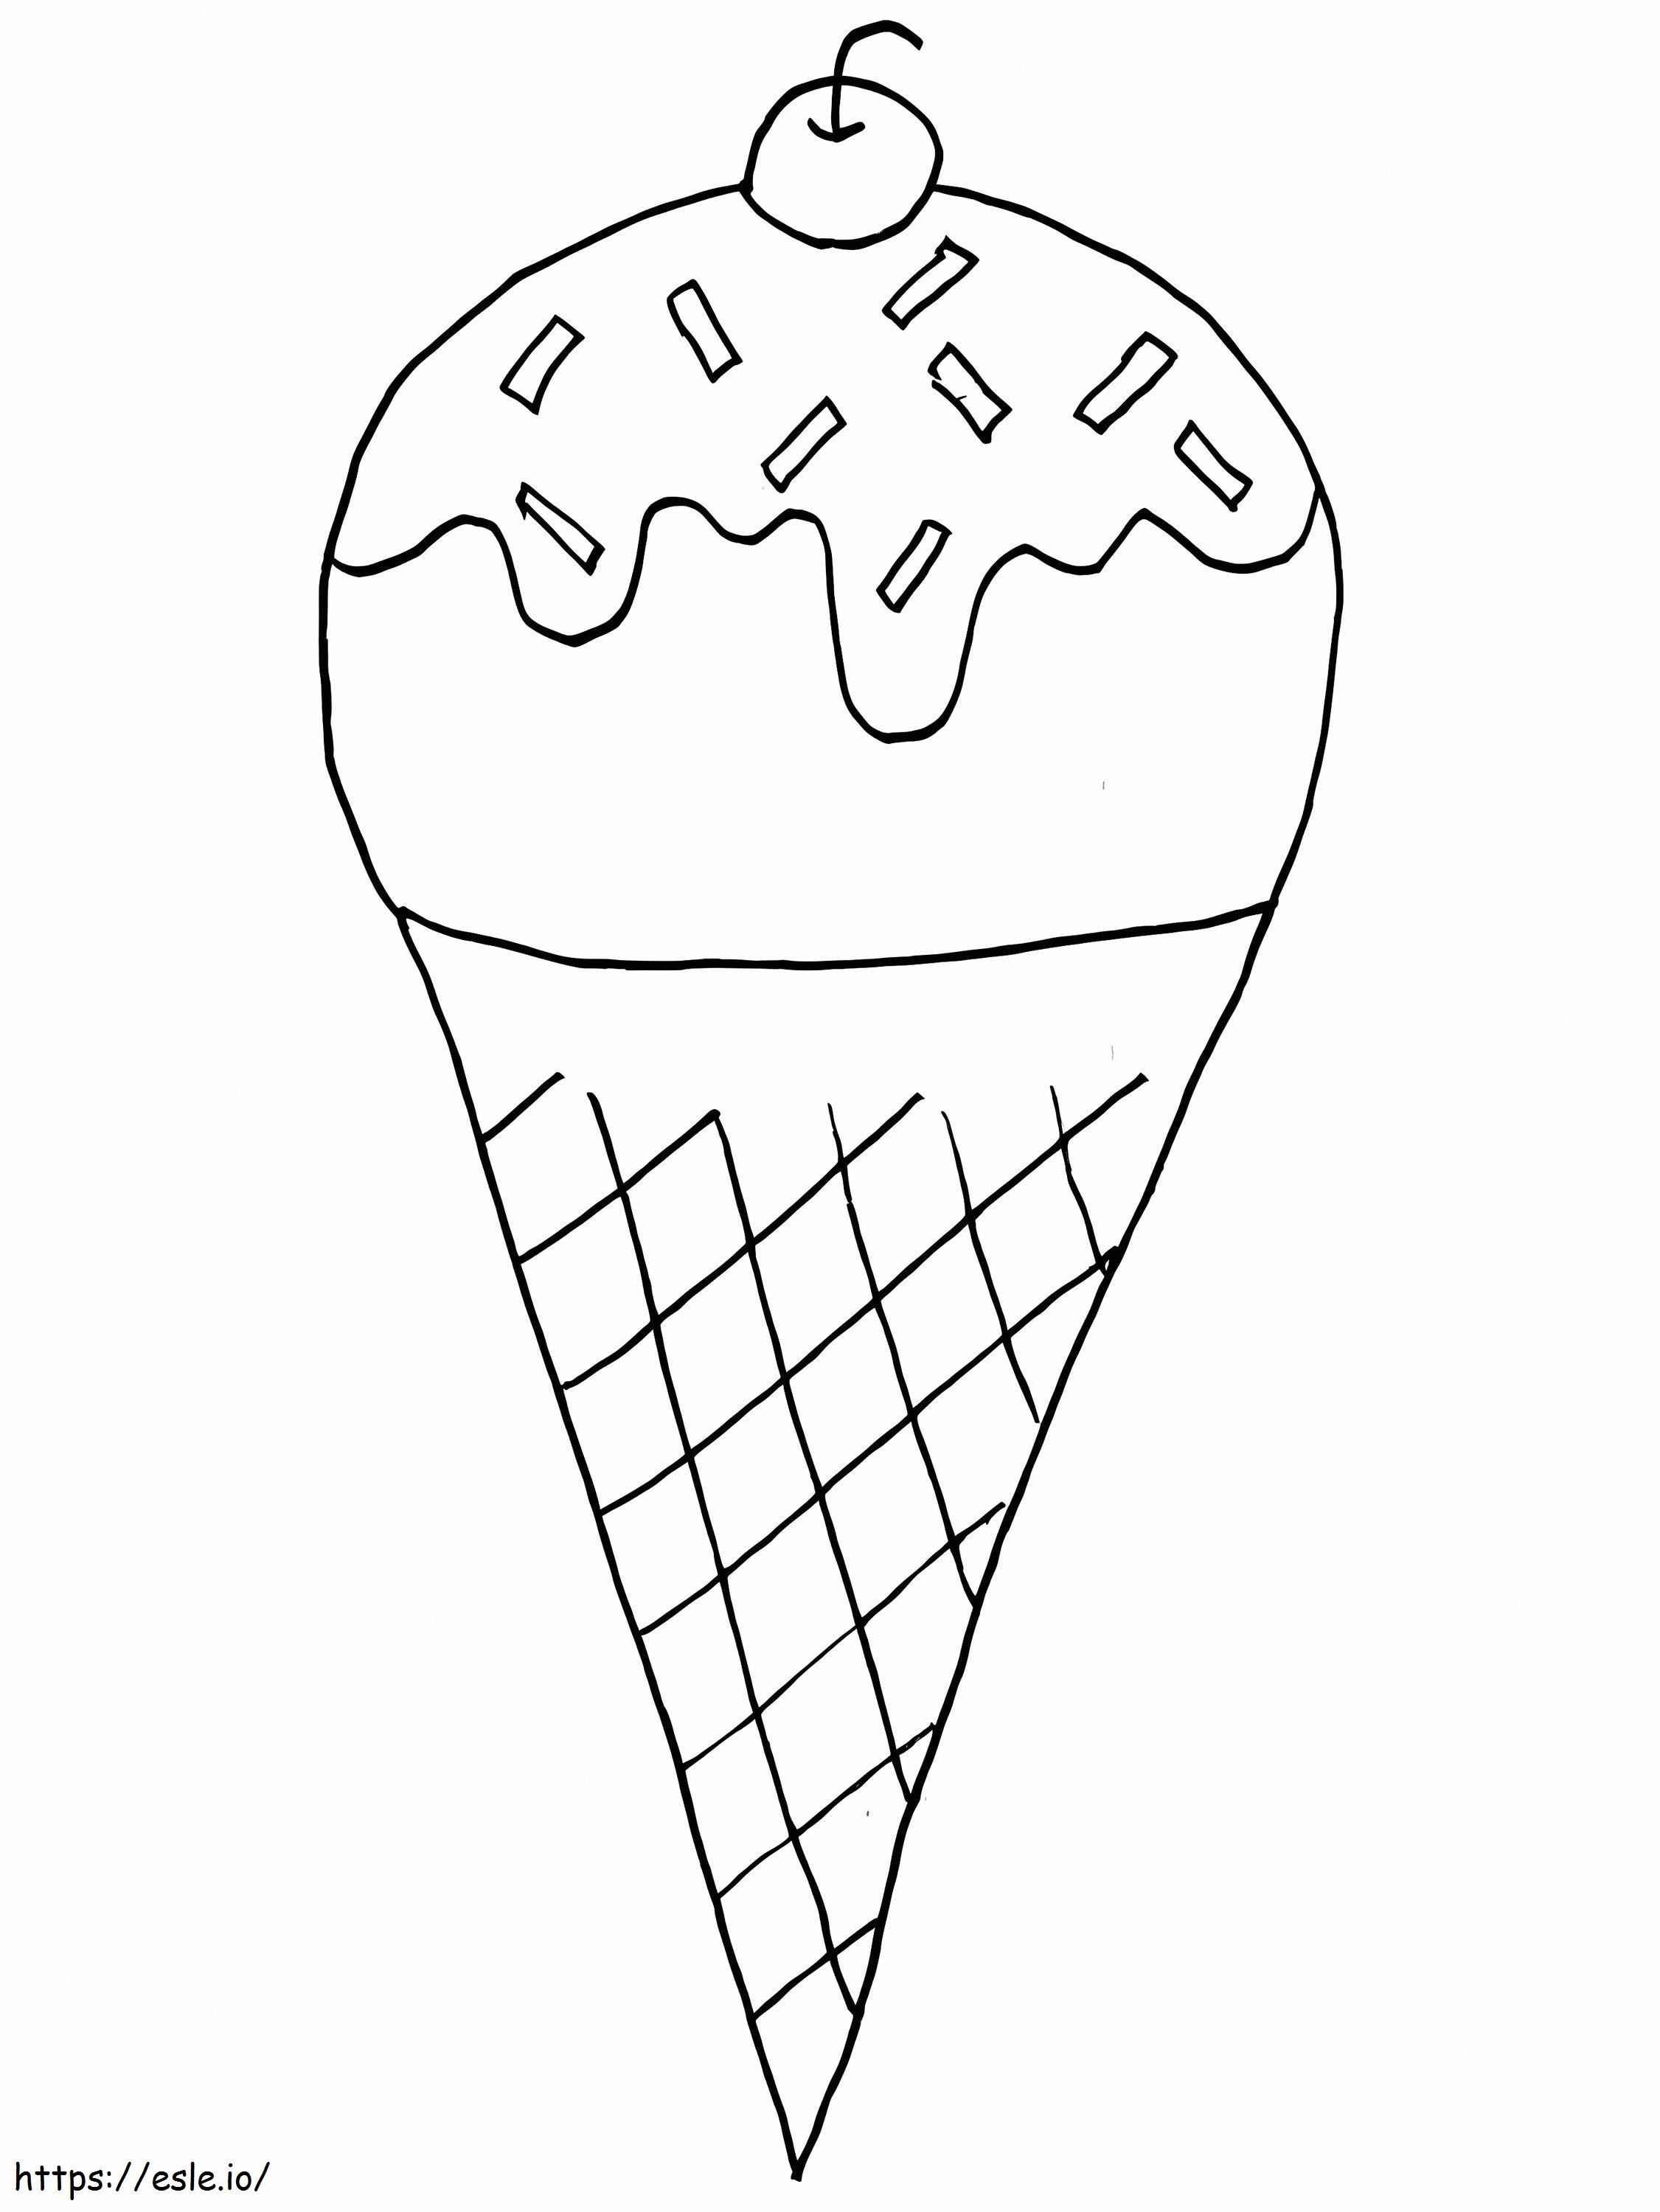 Delicious Icecream coloring page